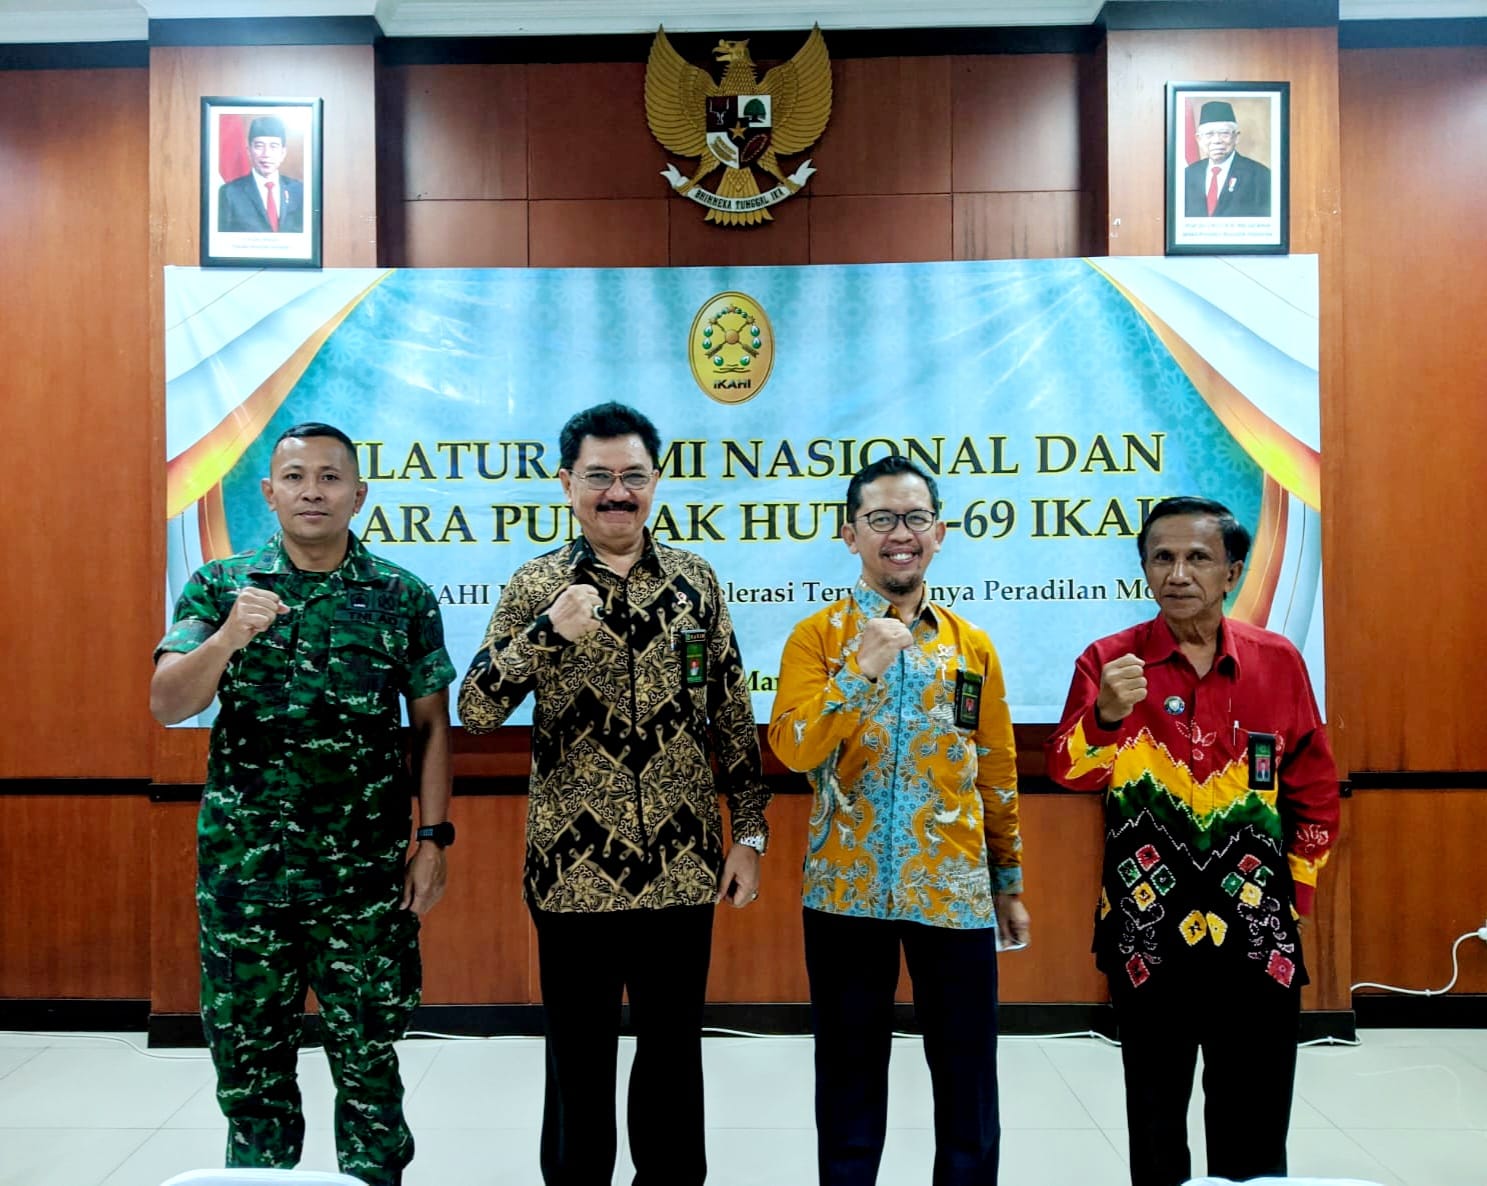 Wakil Ketua Pengadilan Negeri Yogyakarta Mengikuti Silaturahmi Nasional dan Acara Puncak HUT ke-69 IKAHI